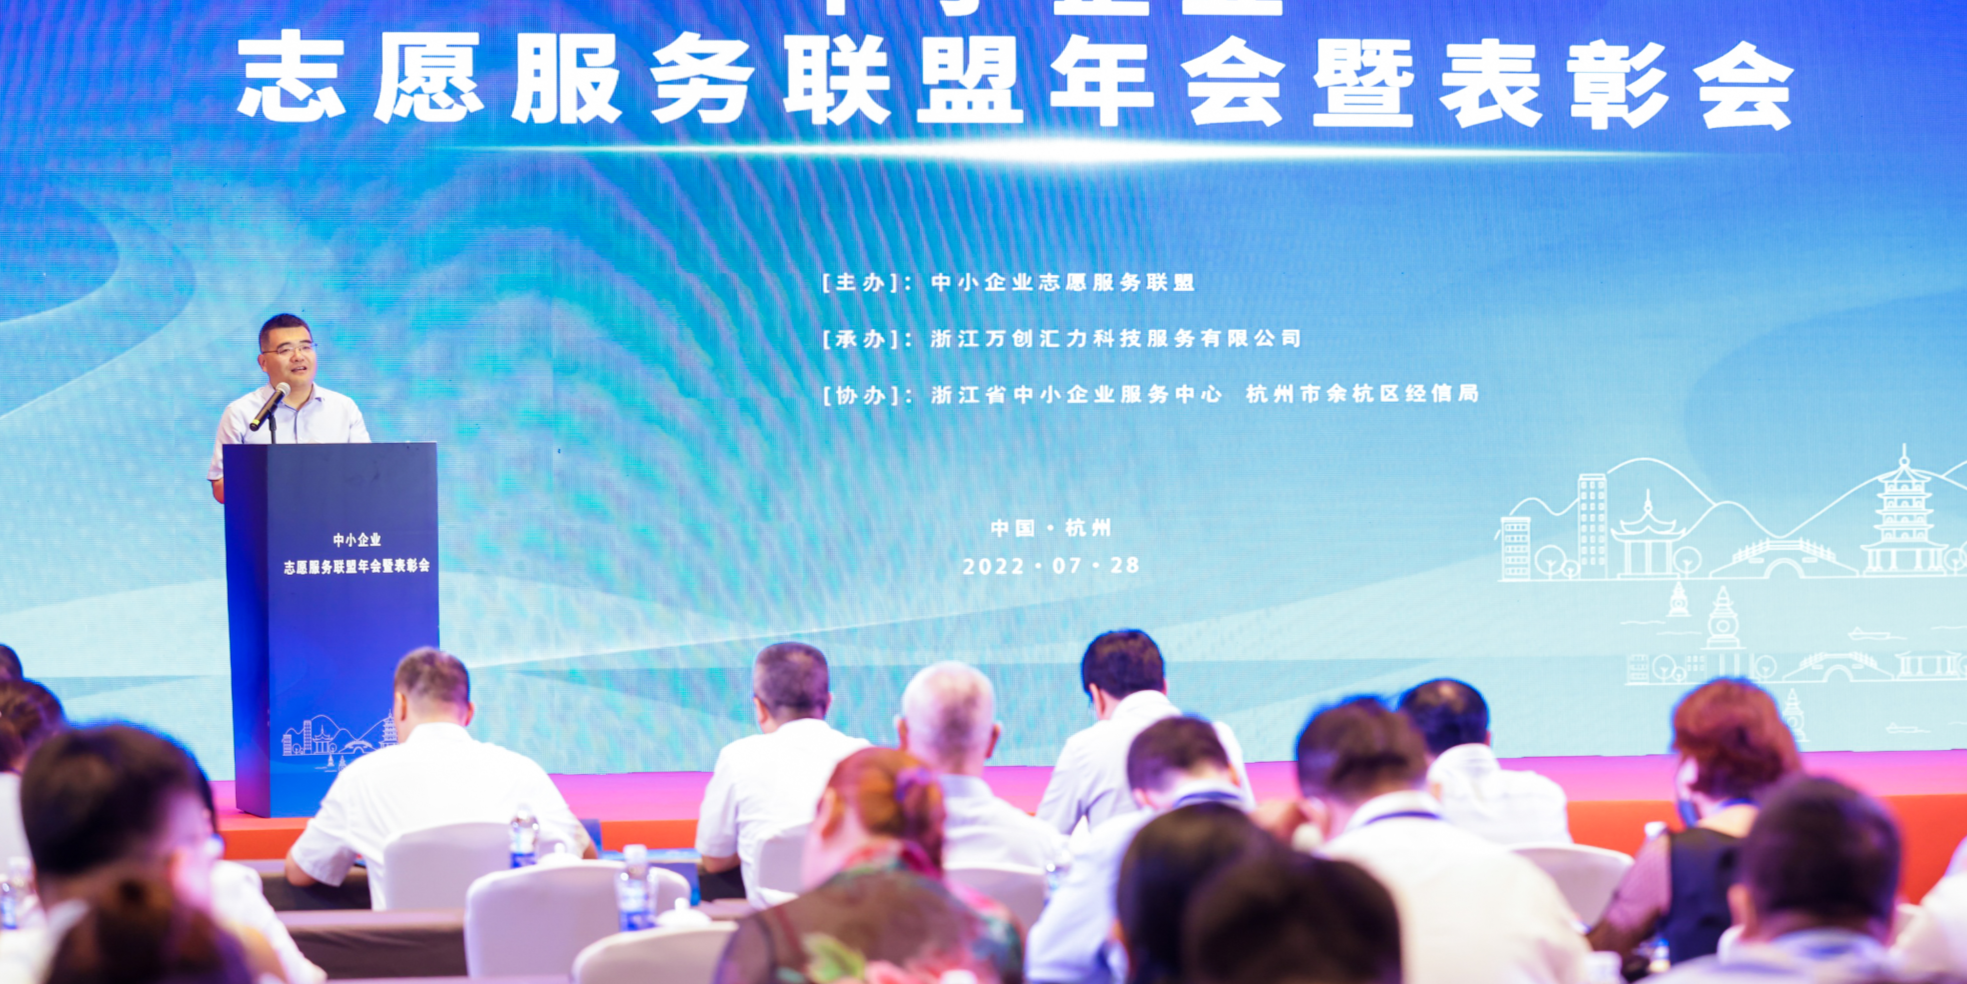 中小企业志愿服务联盟年会暨表彰会在杭州举行